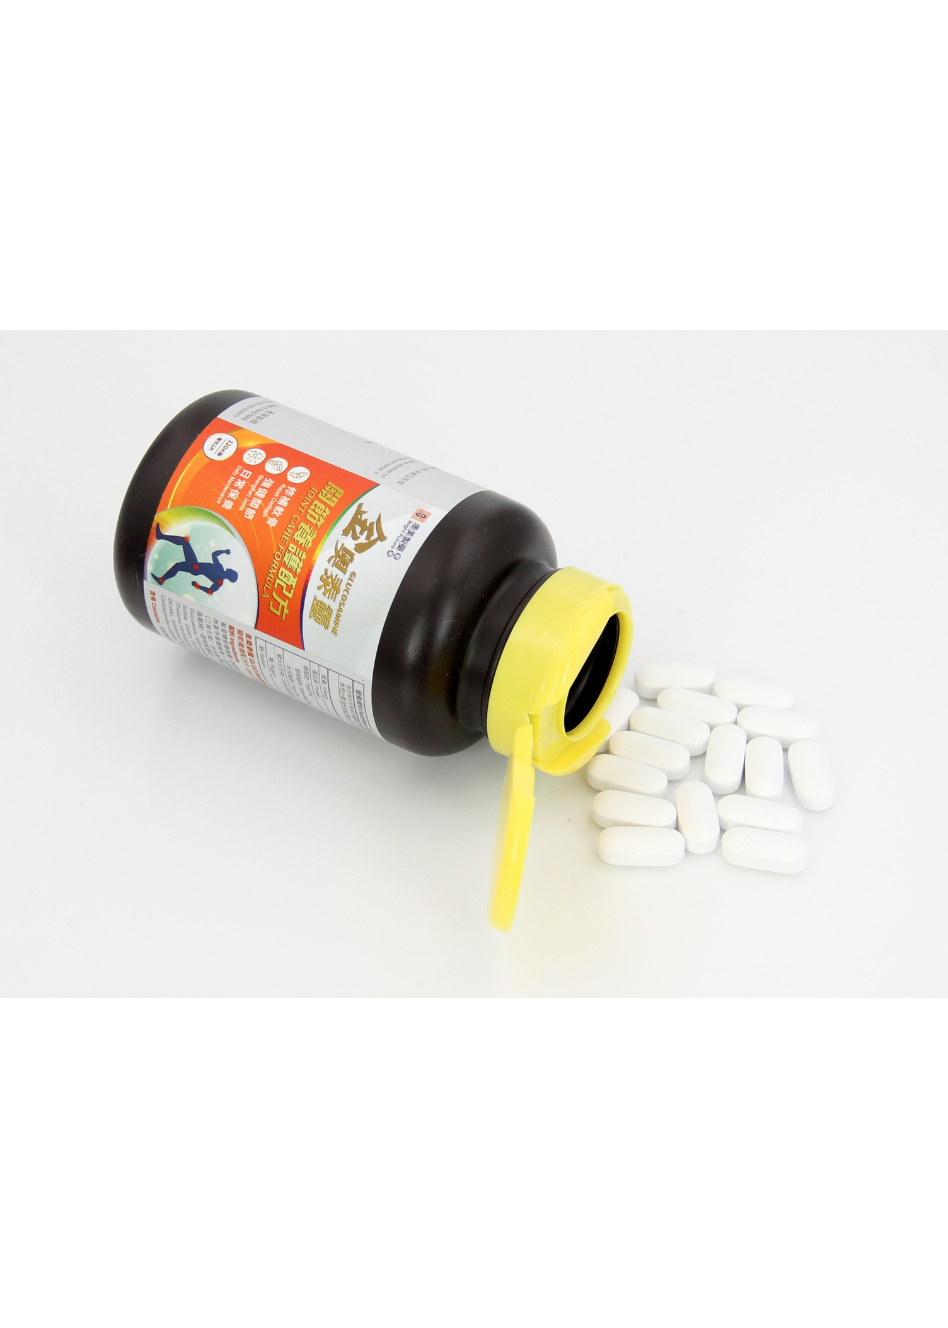 澳美製藥®金奧泰靈-關節養護配方(橙瓶)